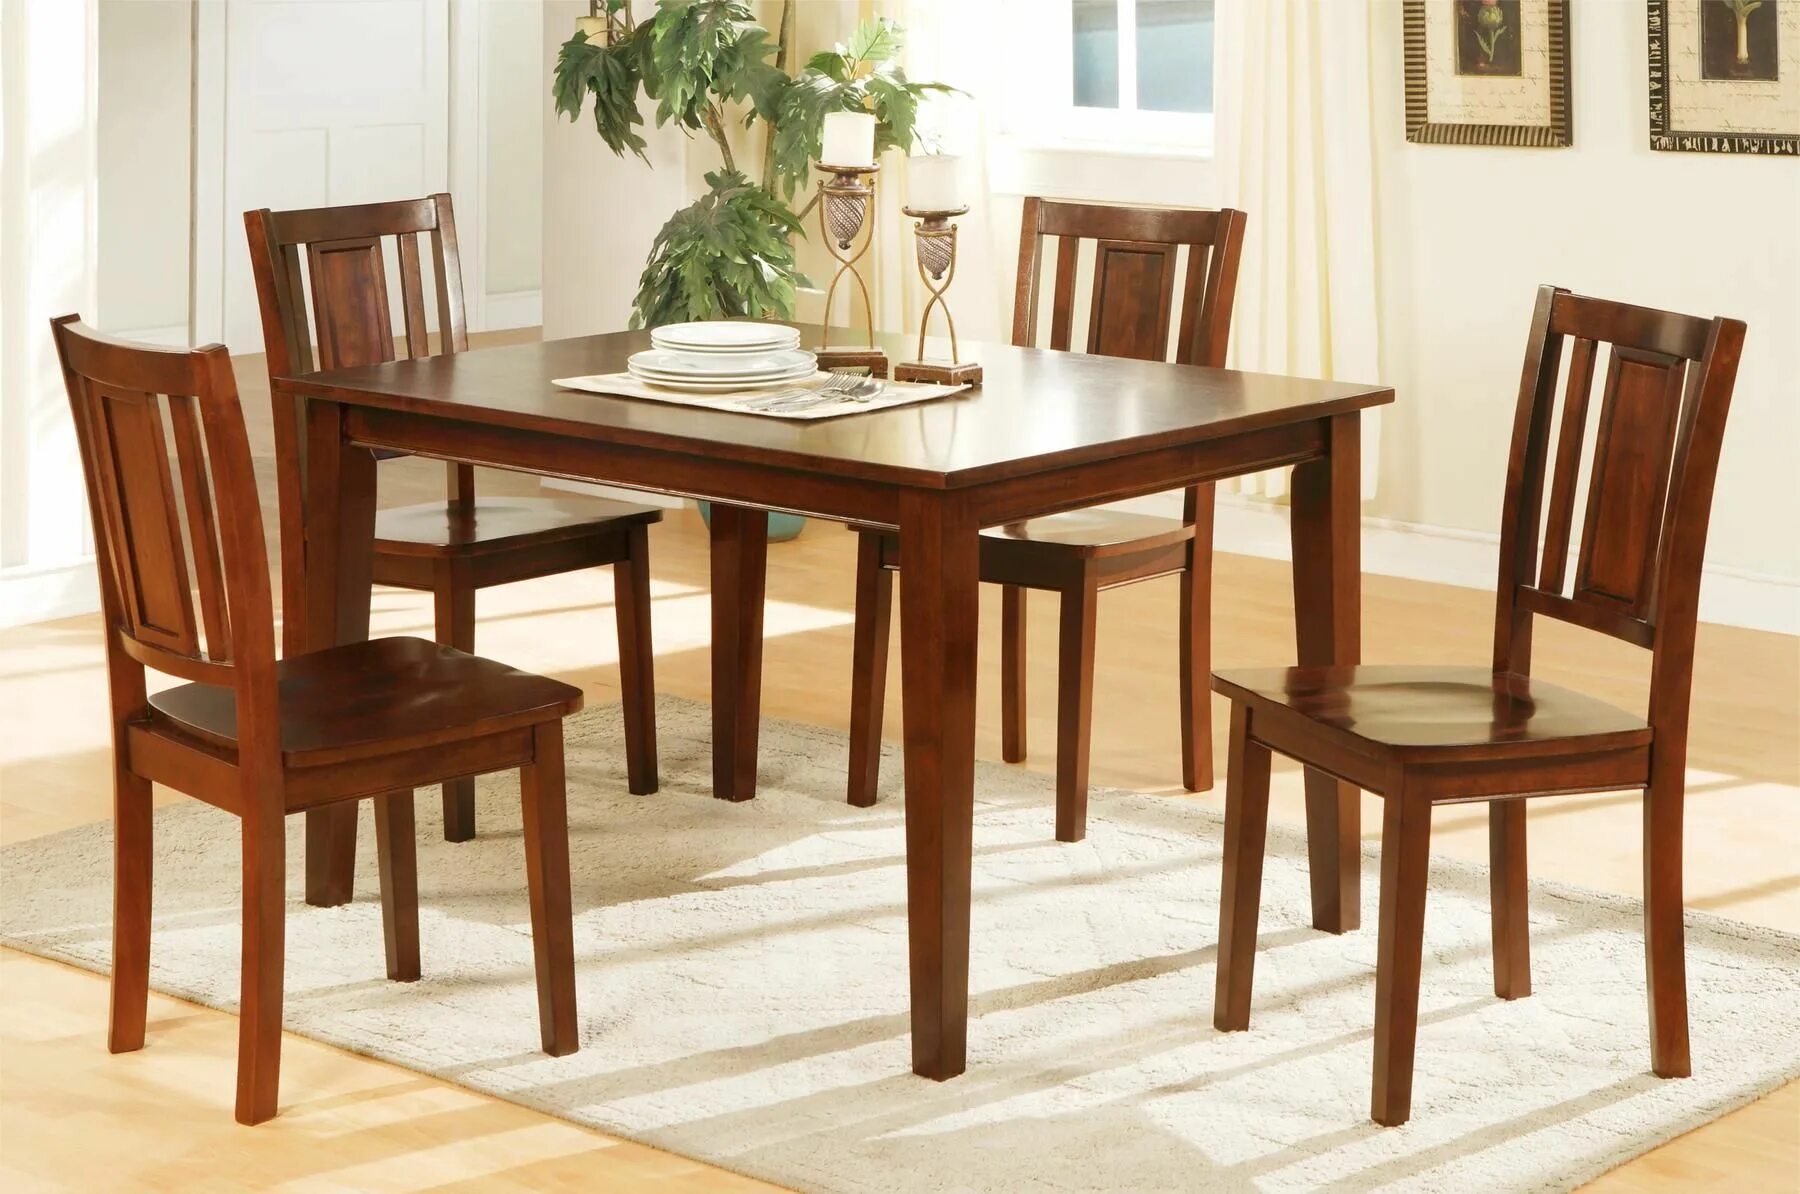 Столы и стулья. Деревянные столы и стулья для кухни. Стол деревянный обеденный. Стол кухонный деревянный. Обеденный комплект стол стулья